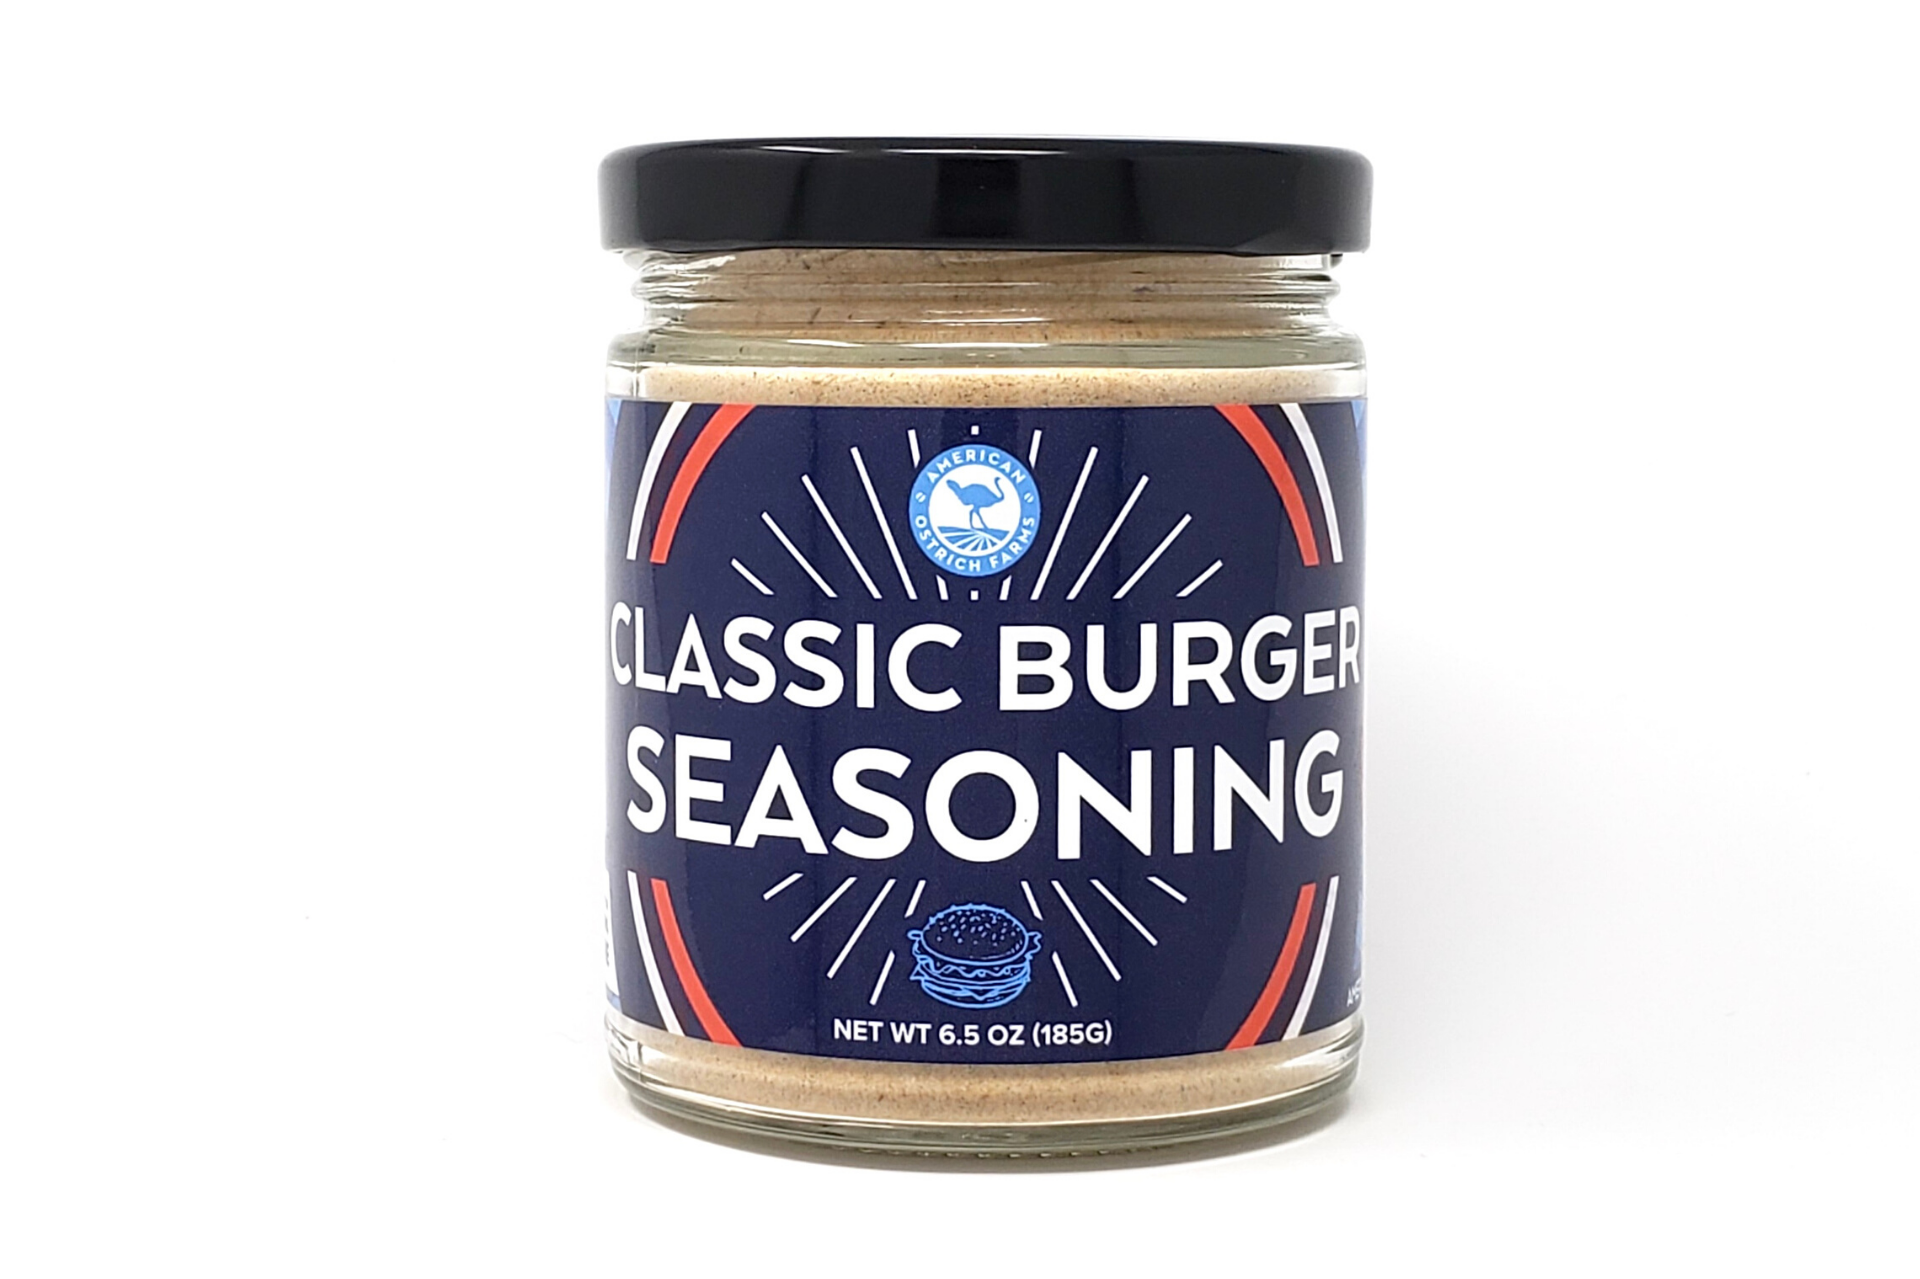 6.5 oz Jar of Classic Burger Seasoning